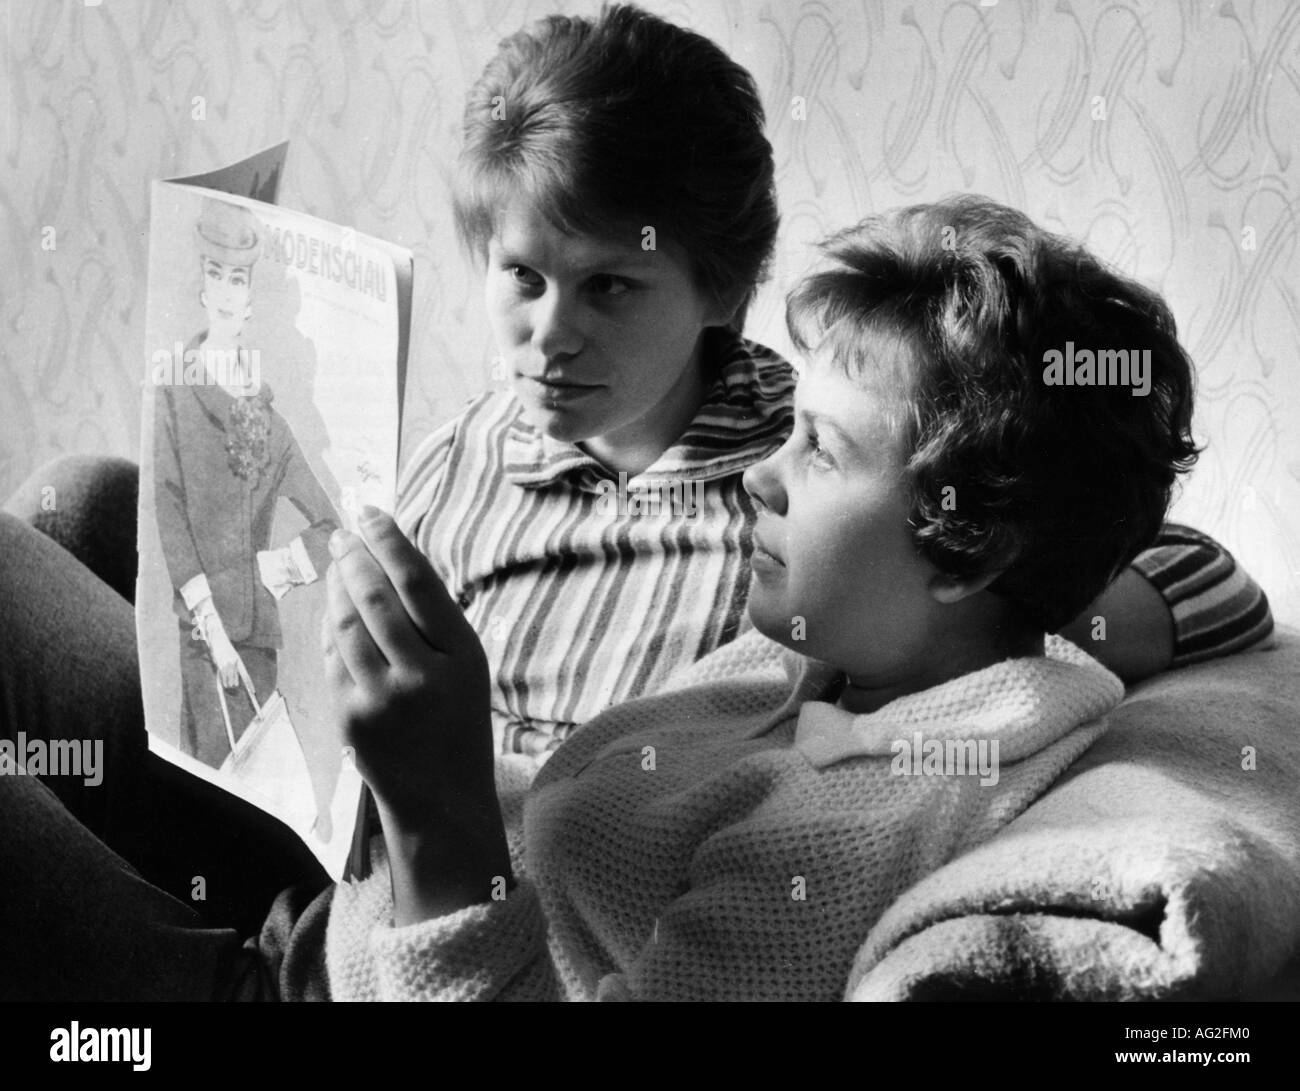 People, juvéniles, deux filles lisant le magazine de mode, Saxe, GDR, 29.9.1961, Banque D'Images